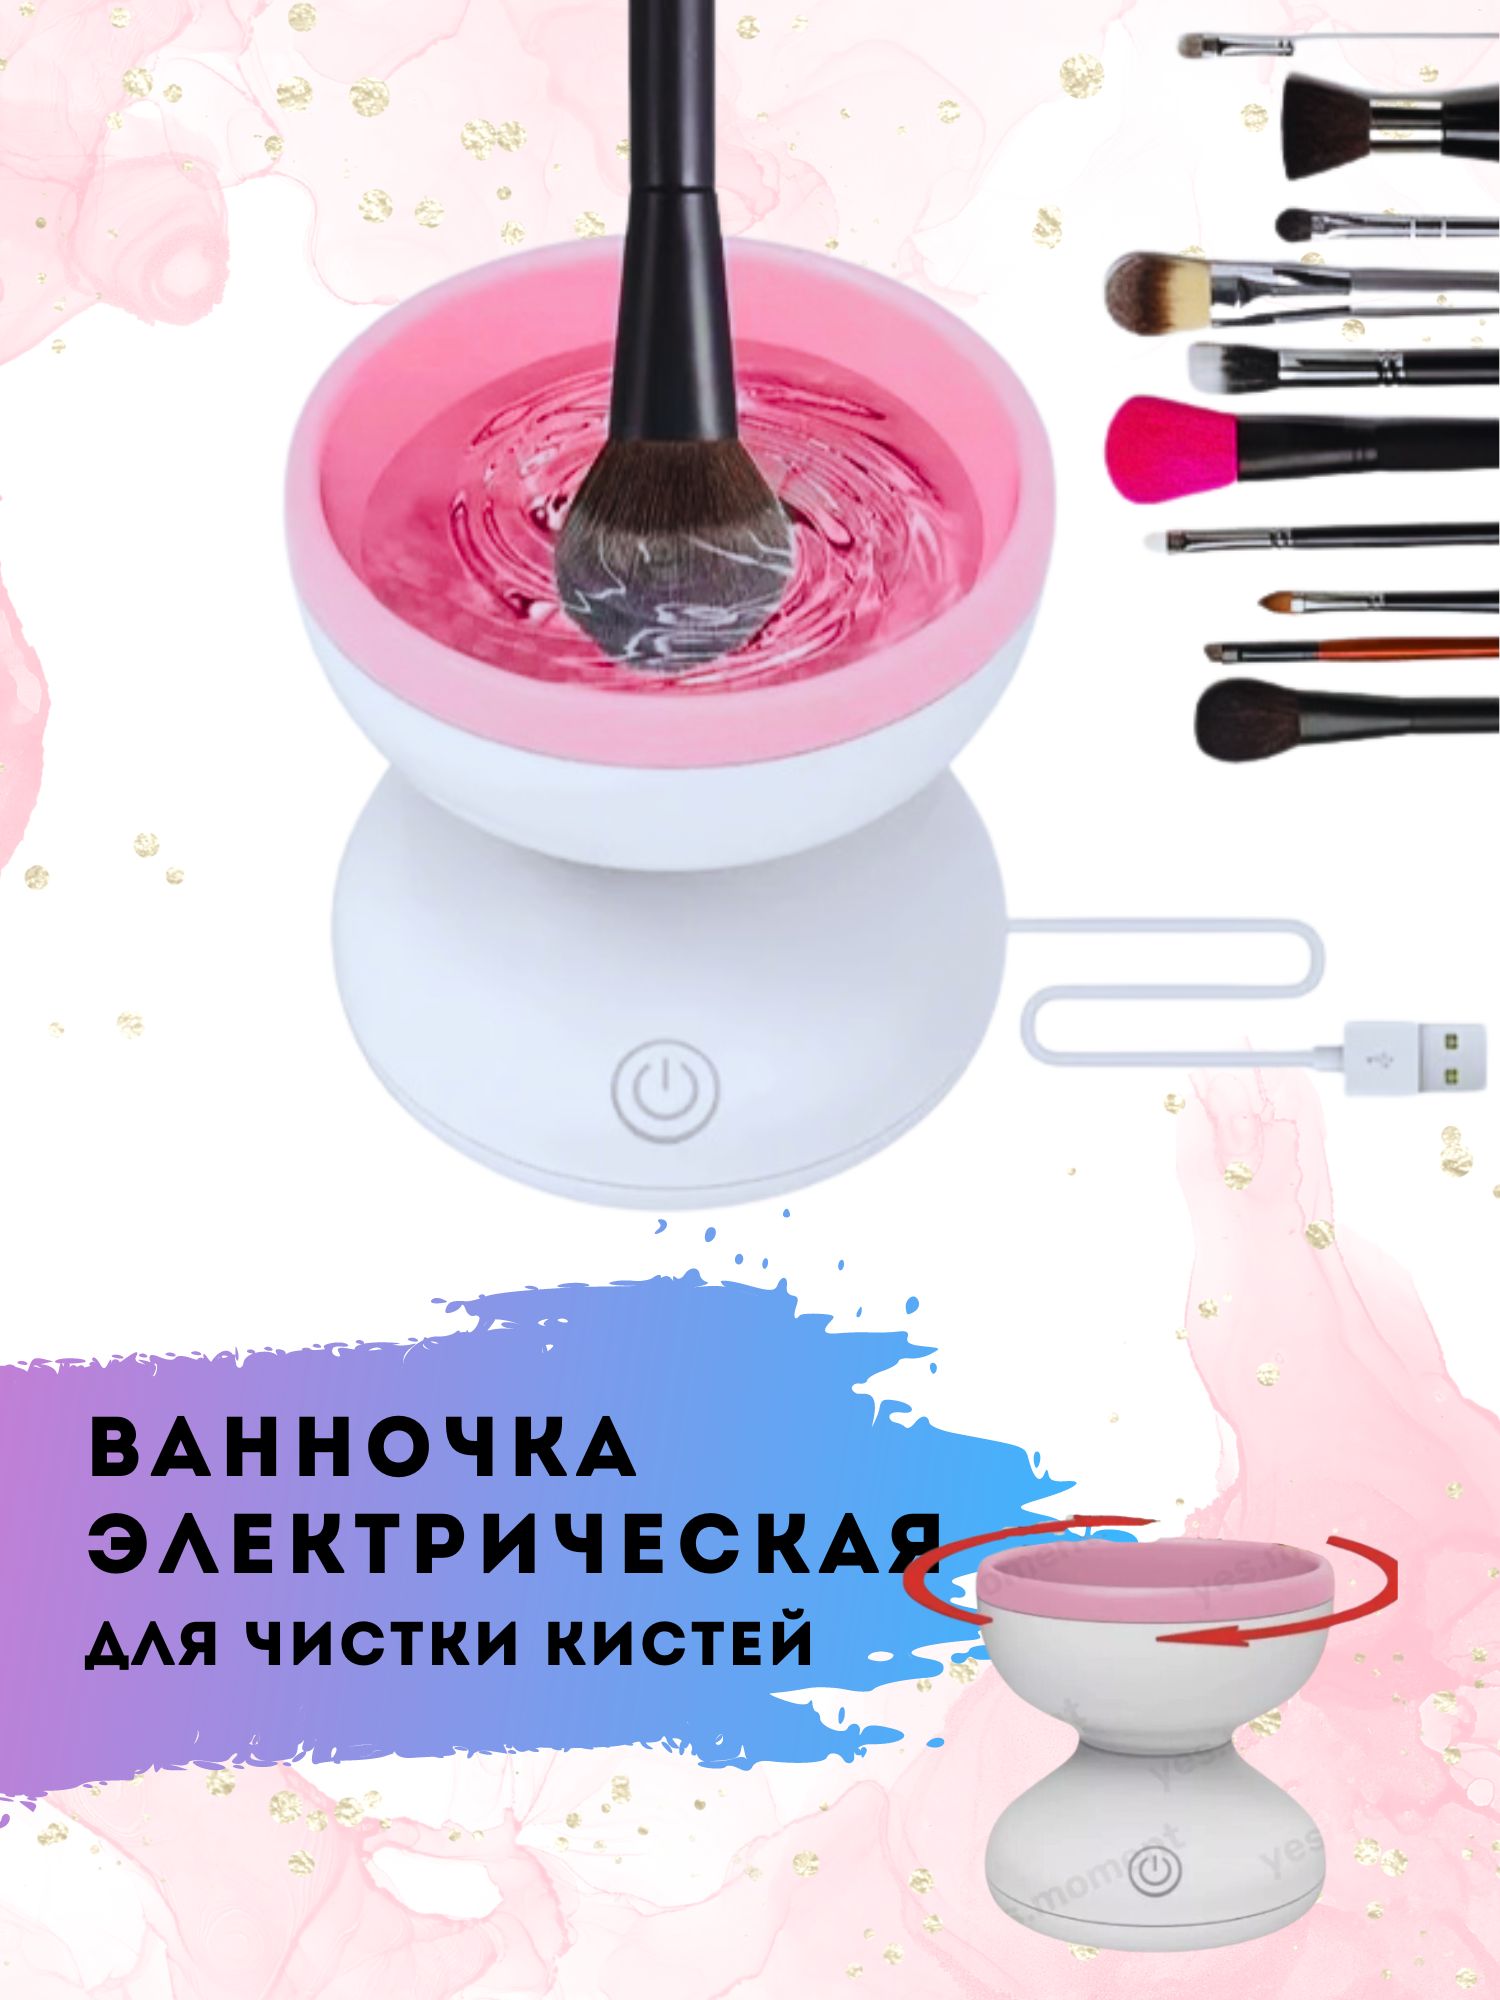 Очиститель для кистей XPX электрический розовый диаметр 8.8 см автоматический очиститель кистей для макияжа с функцией сушки